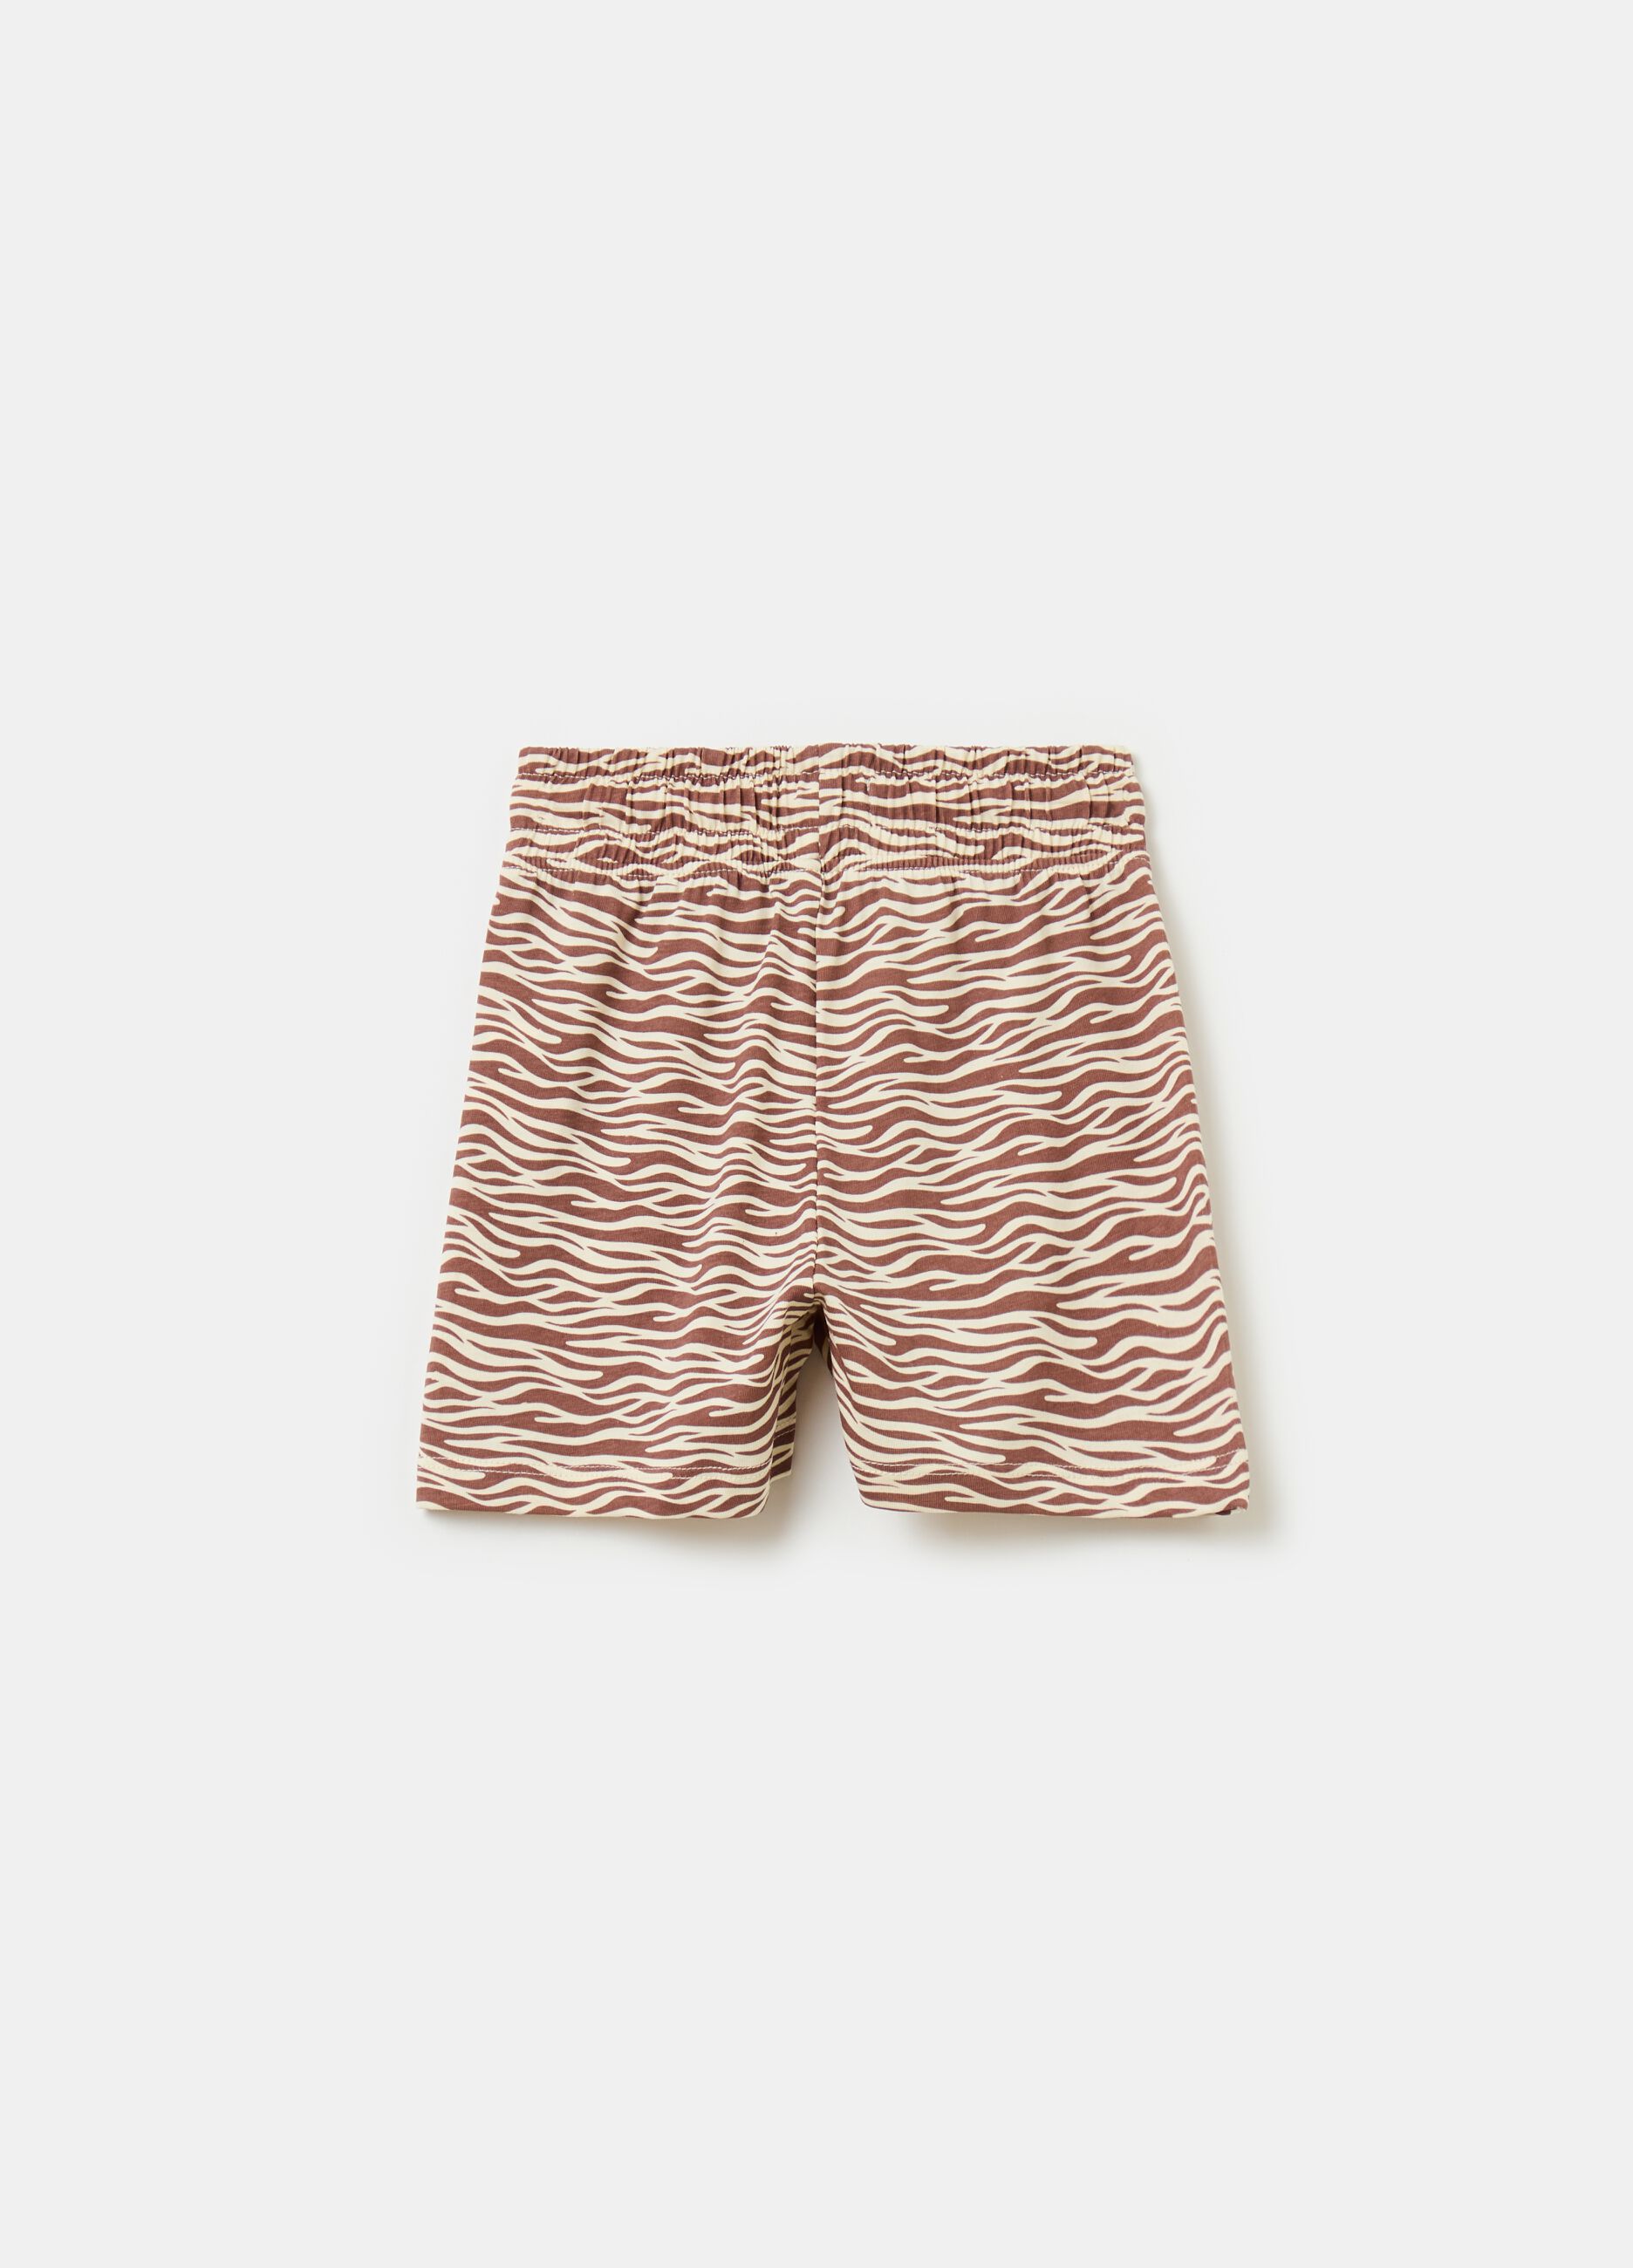 Shorts con estampado animal print